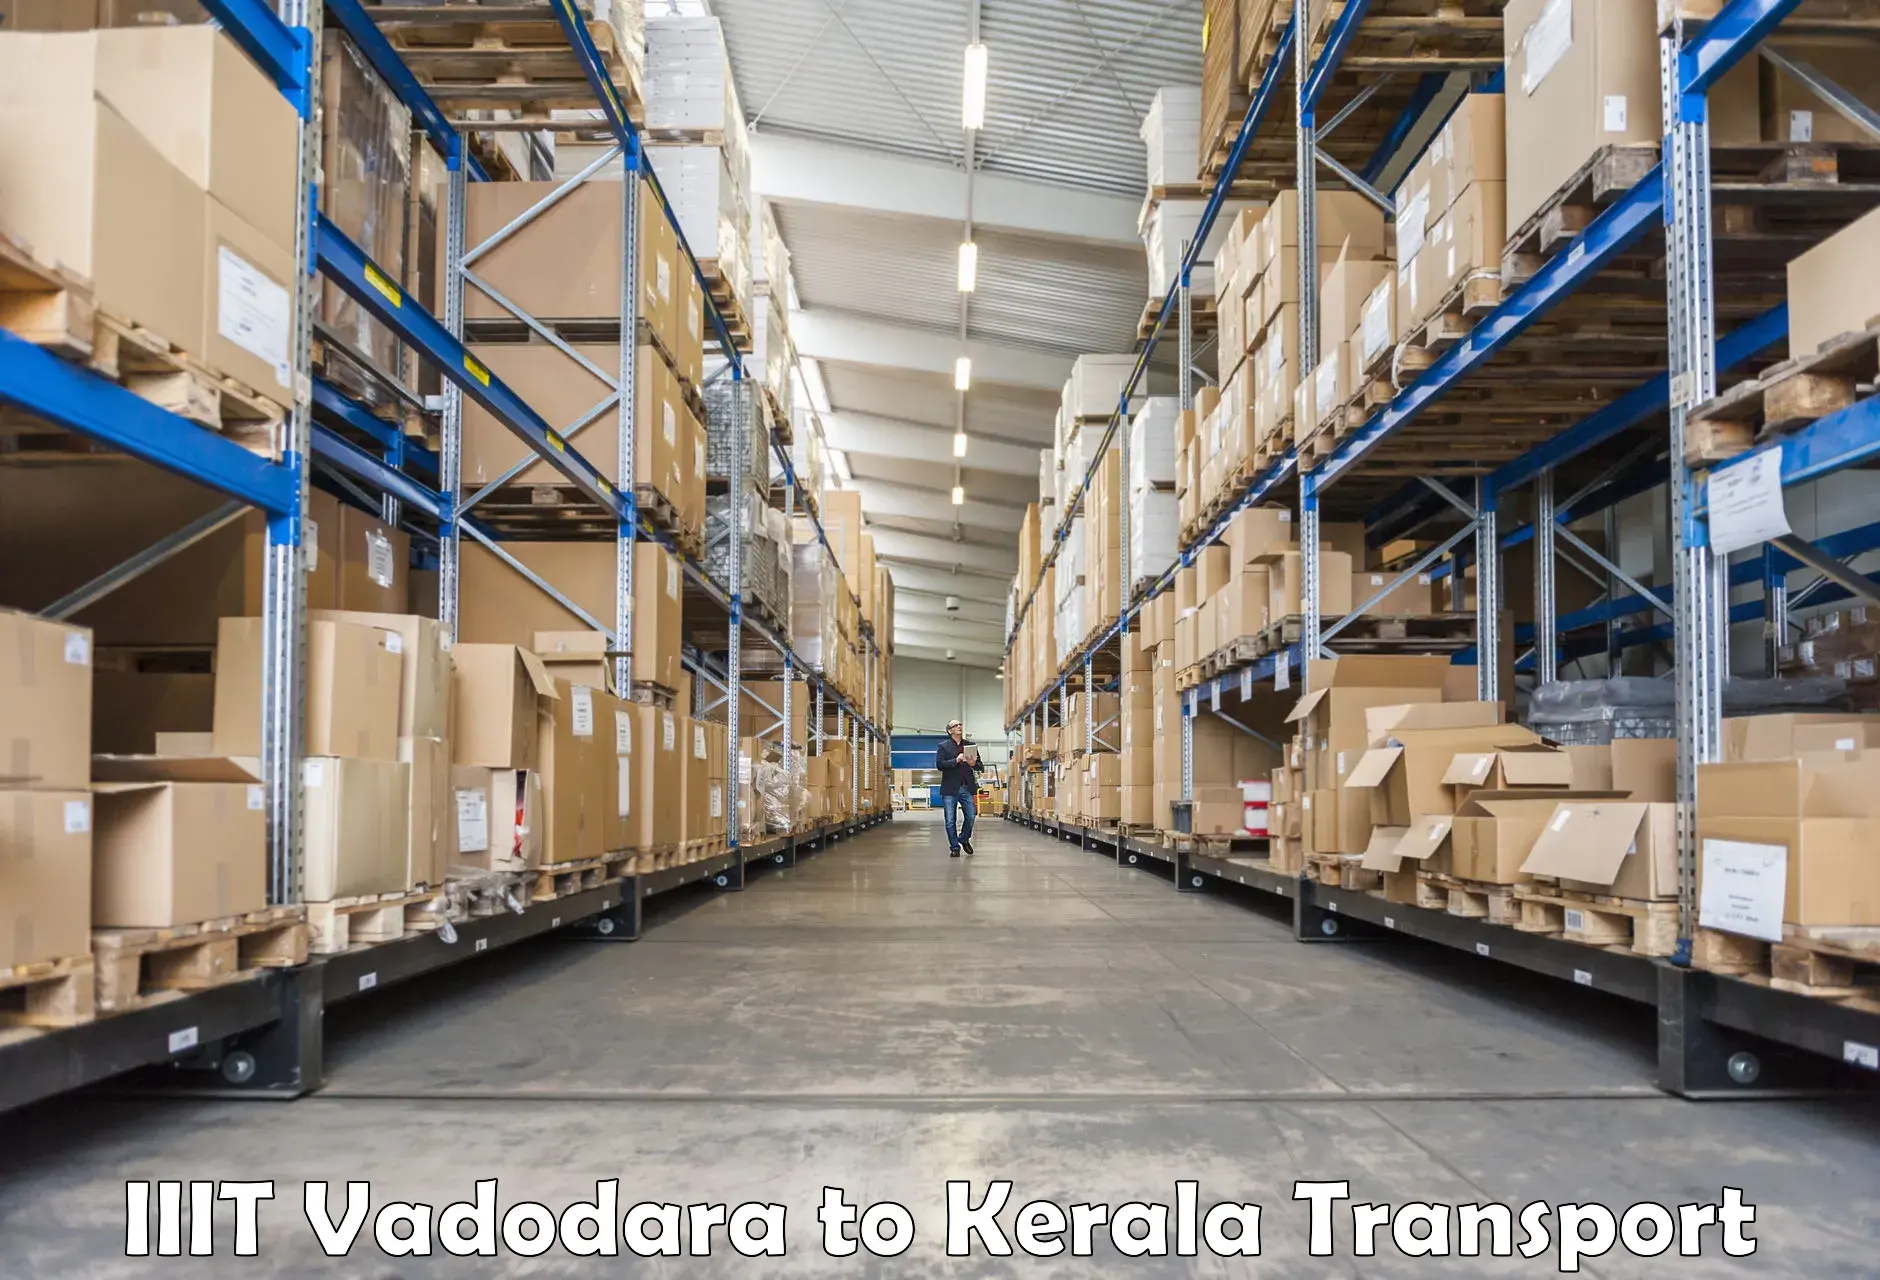 Part load transport service in India in IIIT Vadodara to Idukki